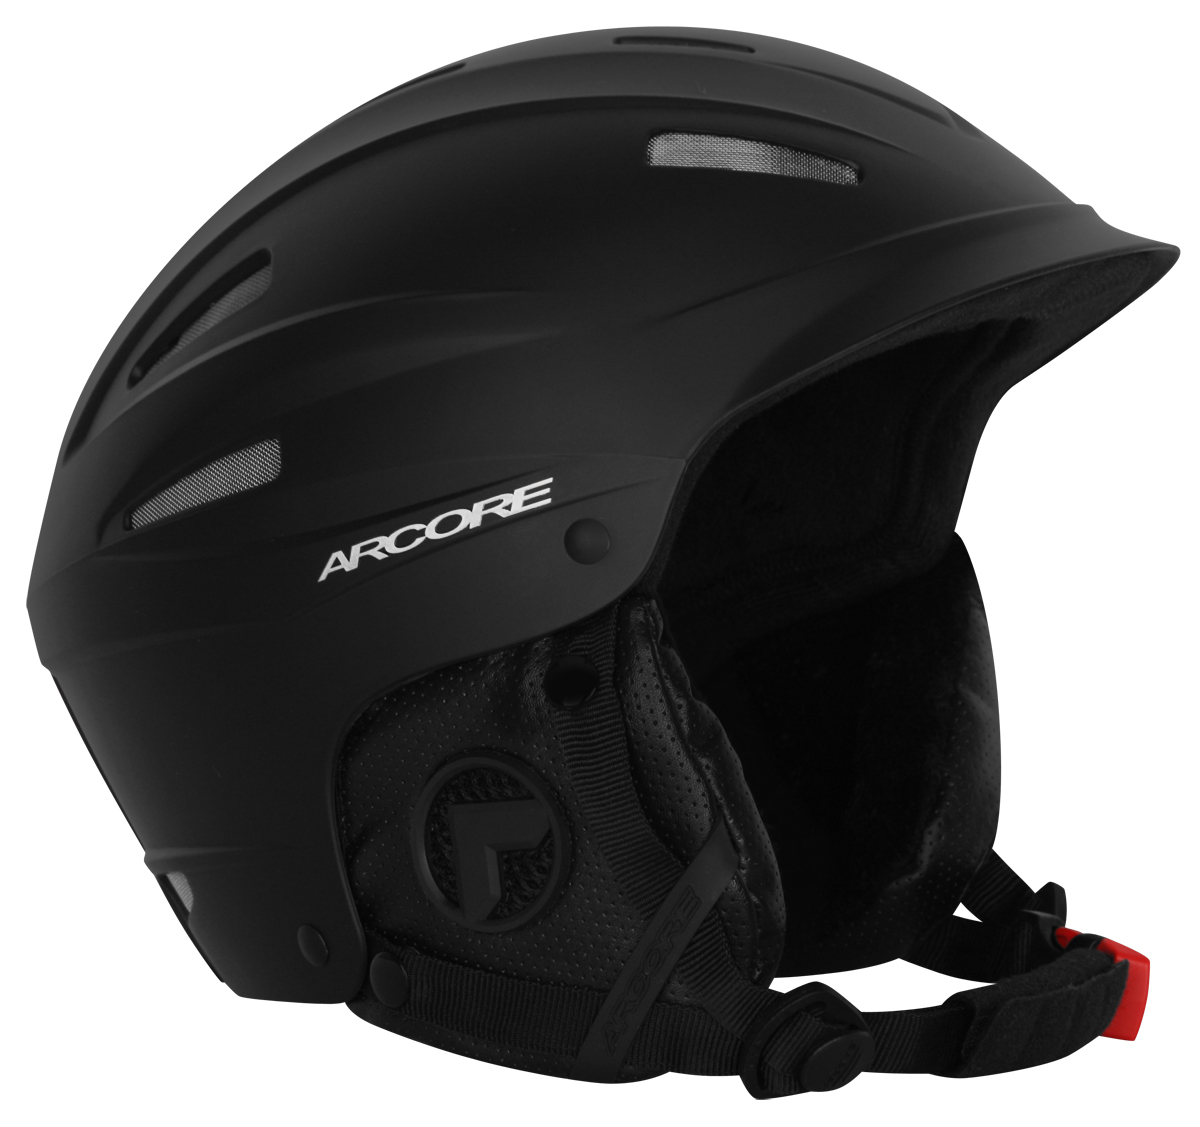 GAD - Ski helmet